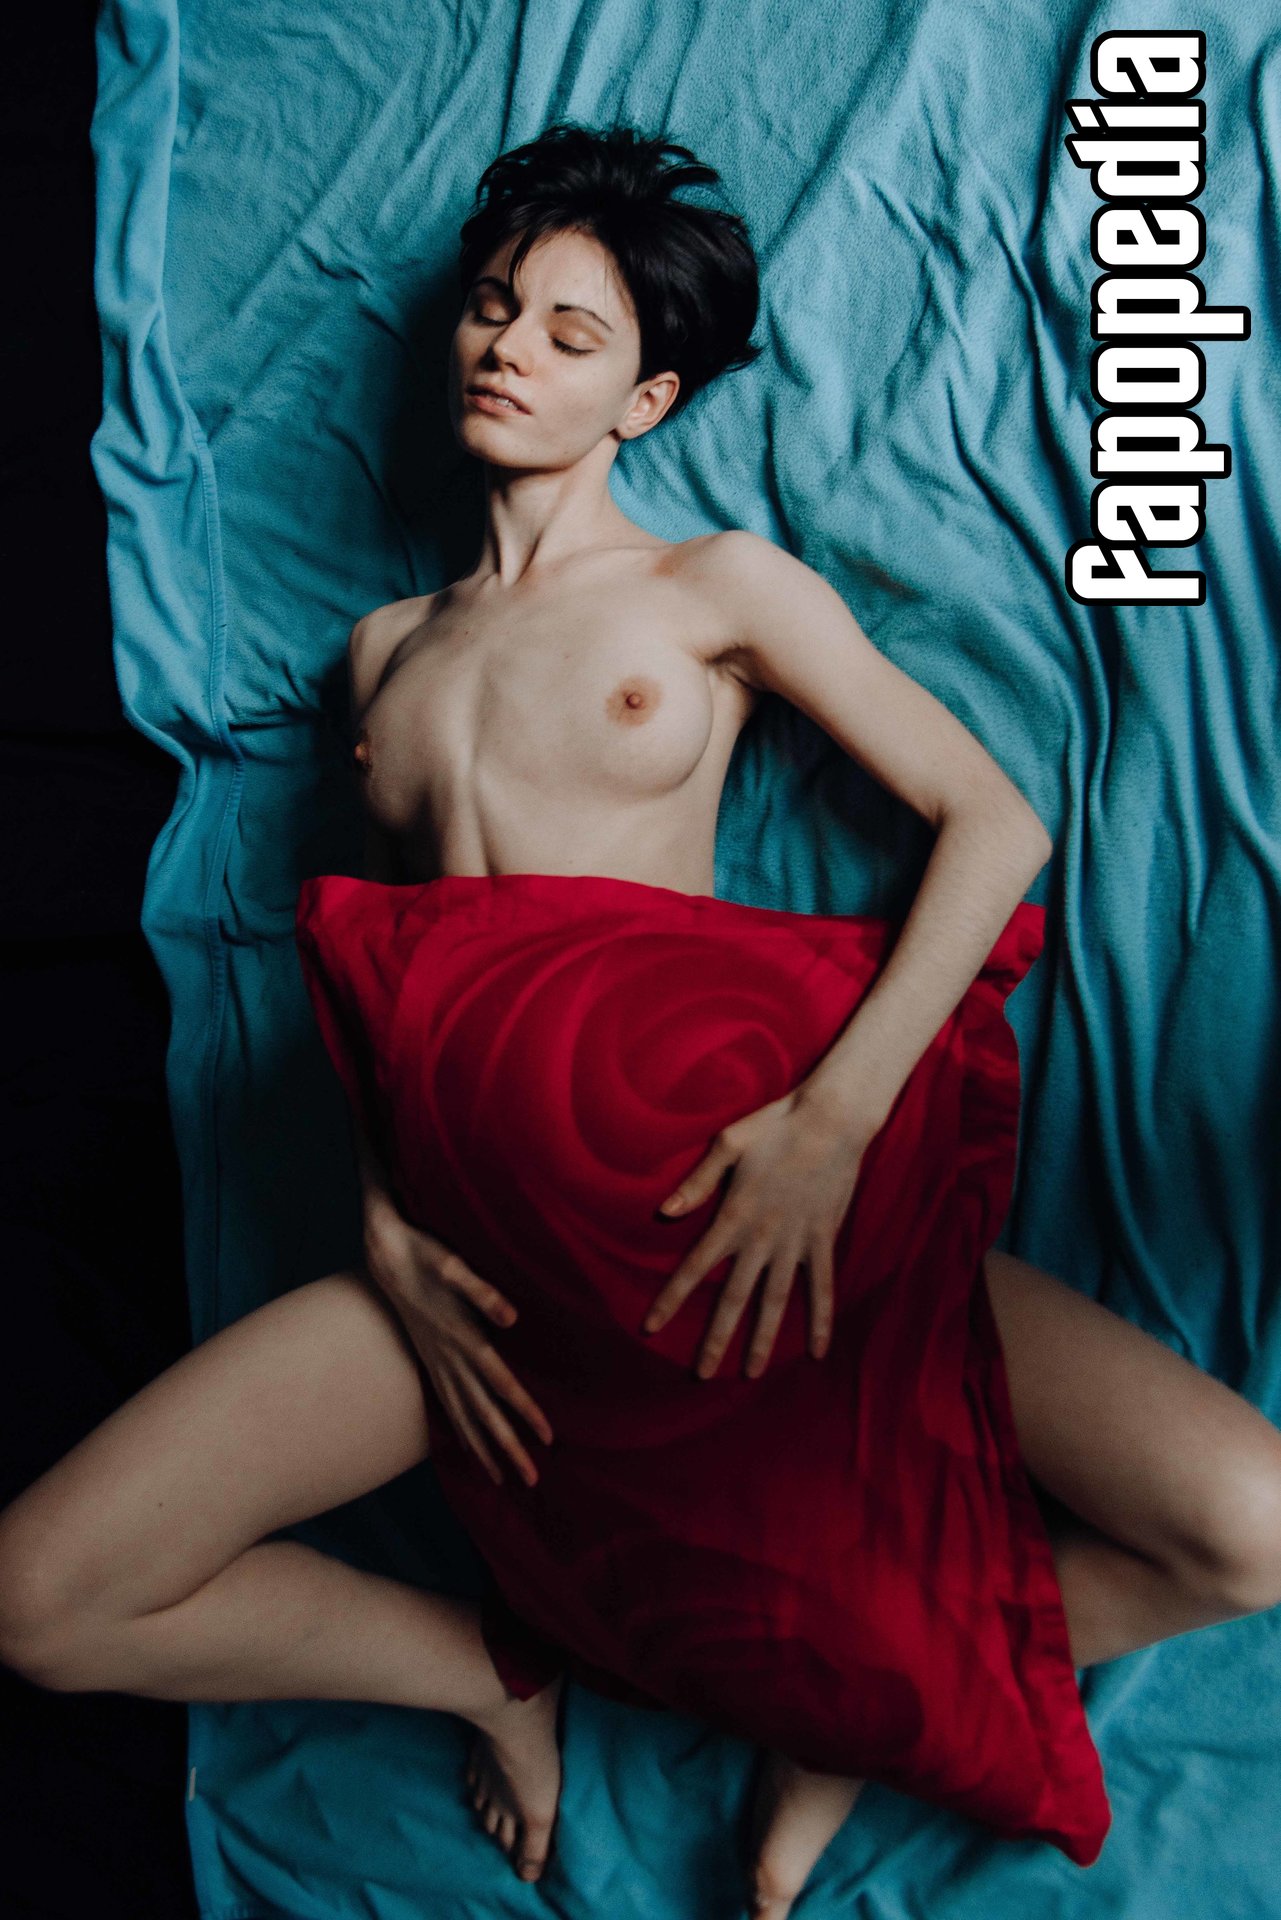 Olga Winter Nude Leaks - Photo #221392 - Fapopedia